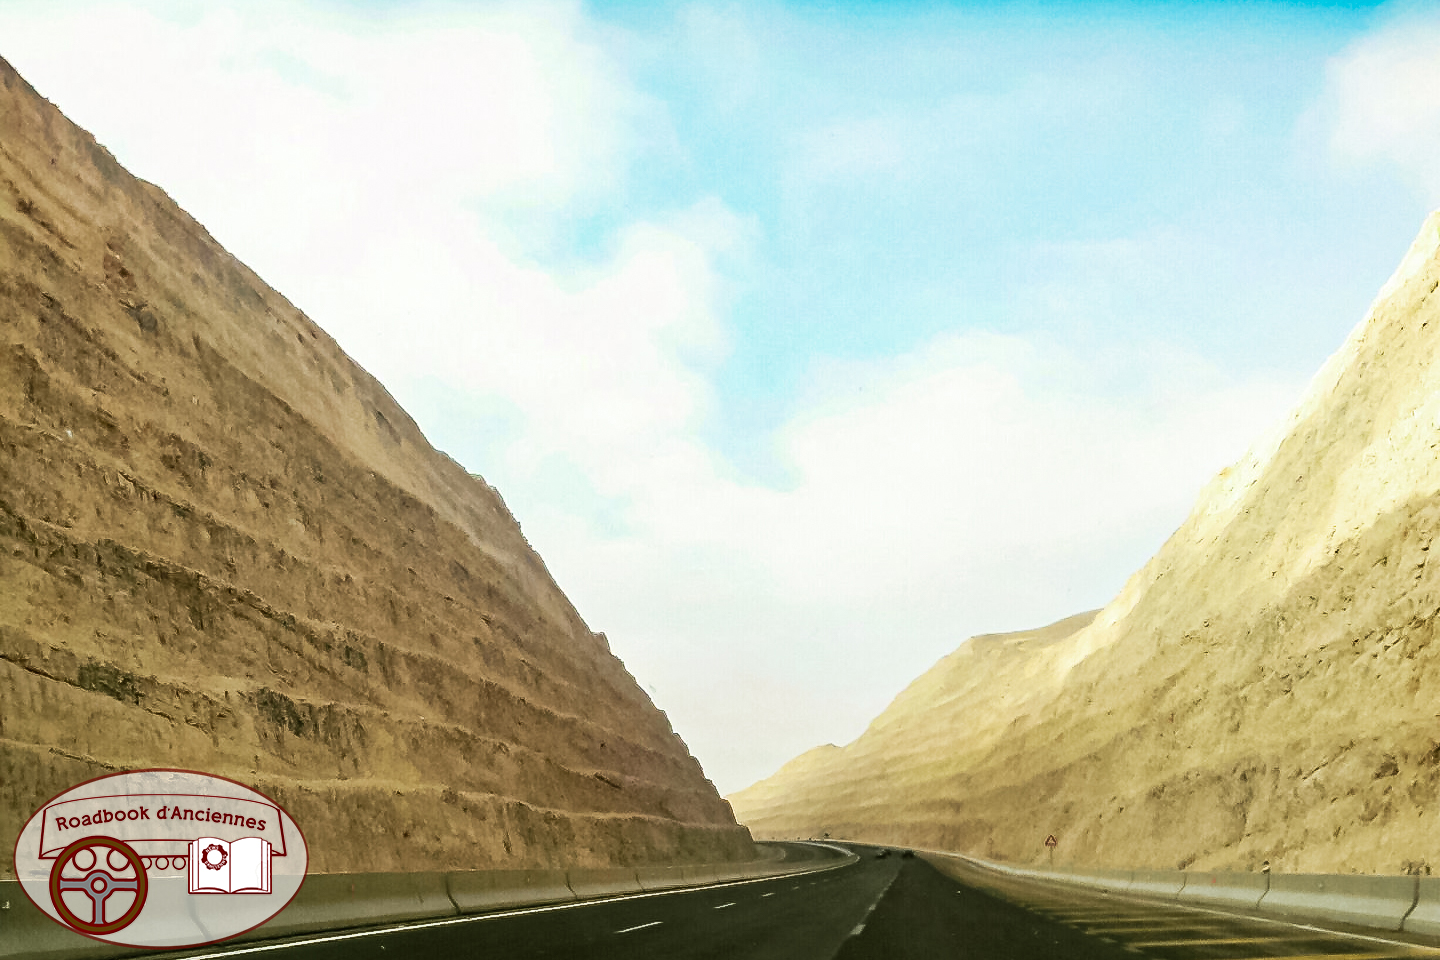 Roadbook d’Anciennes #42 : La route de la montagne majestueuse en Egypte